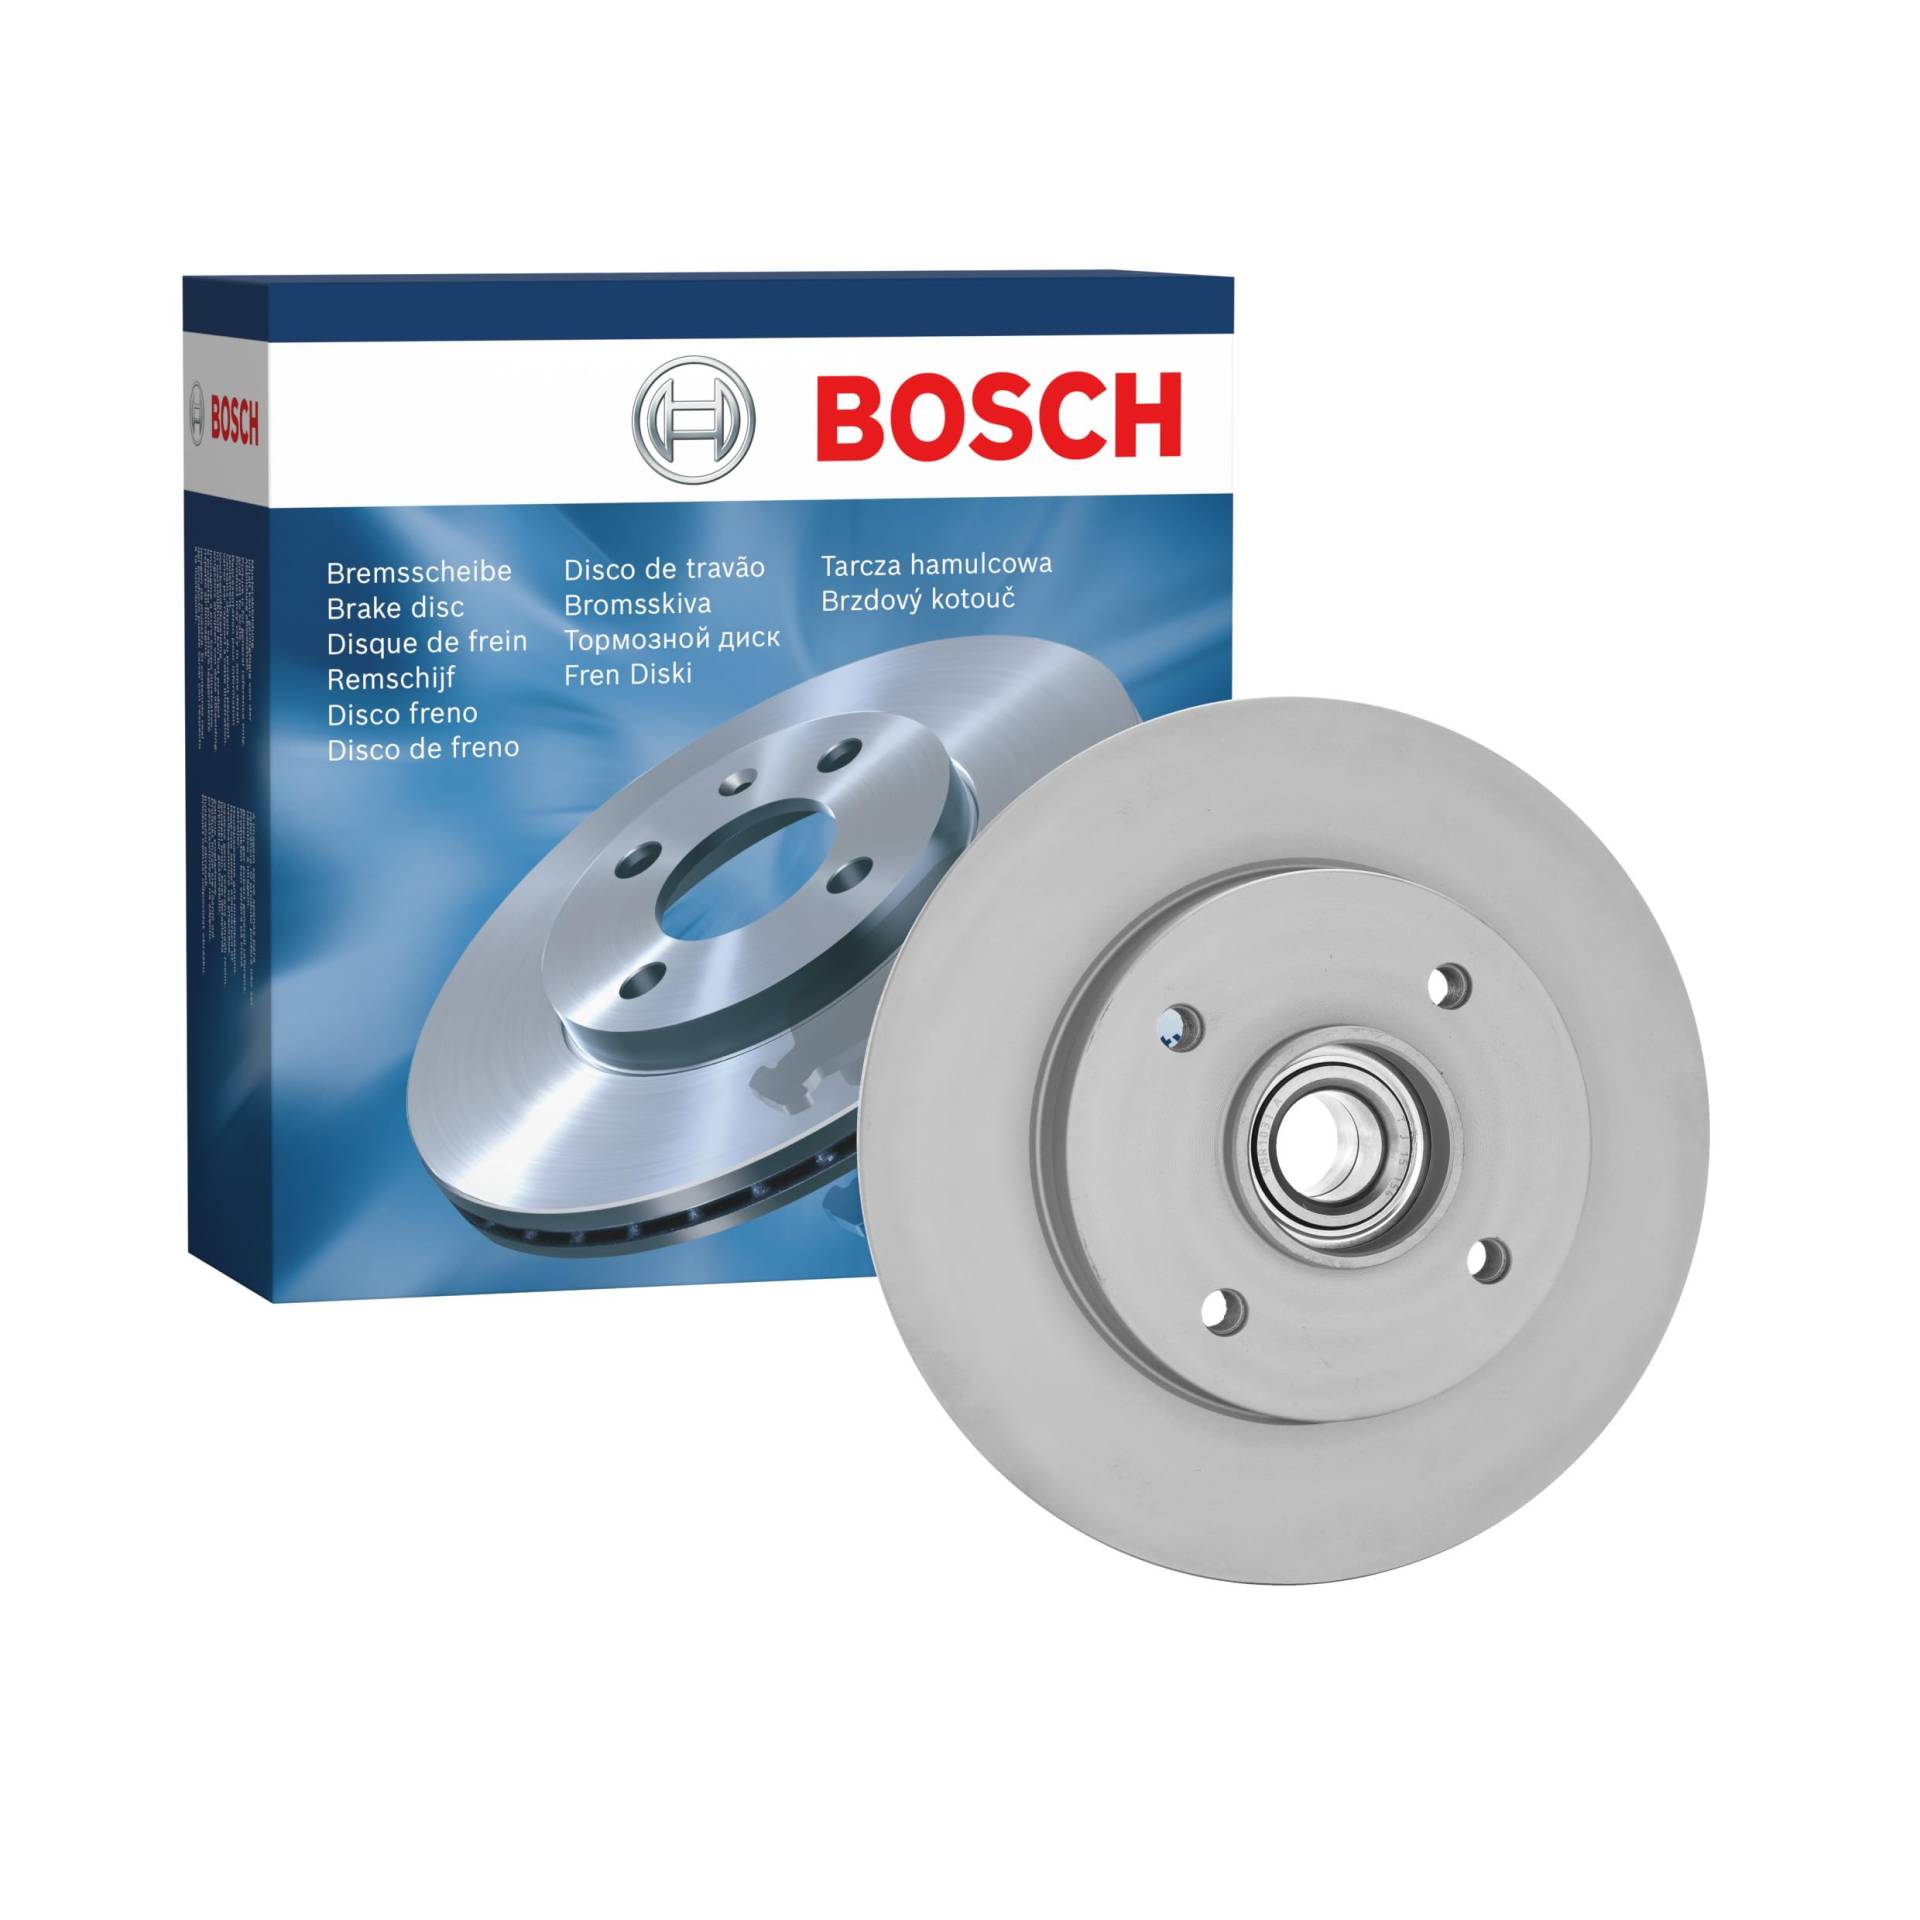 Bosch BD1124 Bremsscheiben mit Radlager - Hinterachse - ECE-R90 Zertifizierung - eine Bremsscheibe von Bosch Automotive